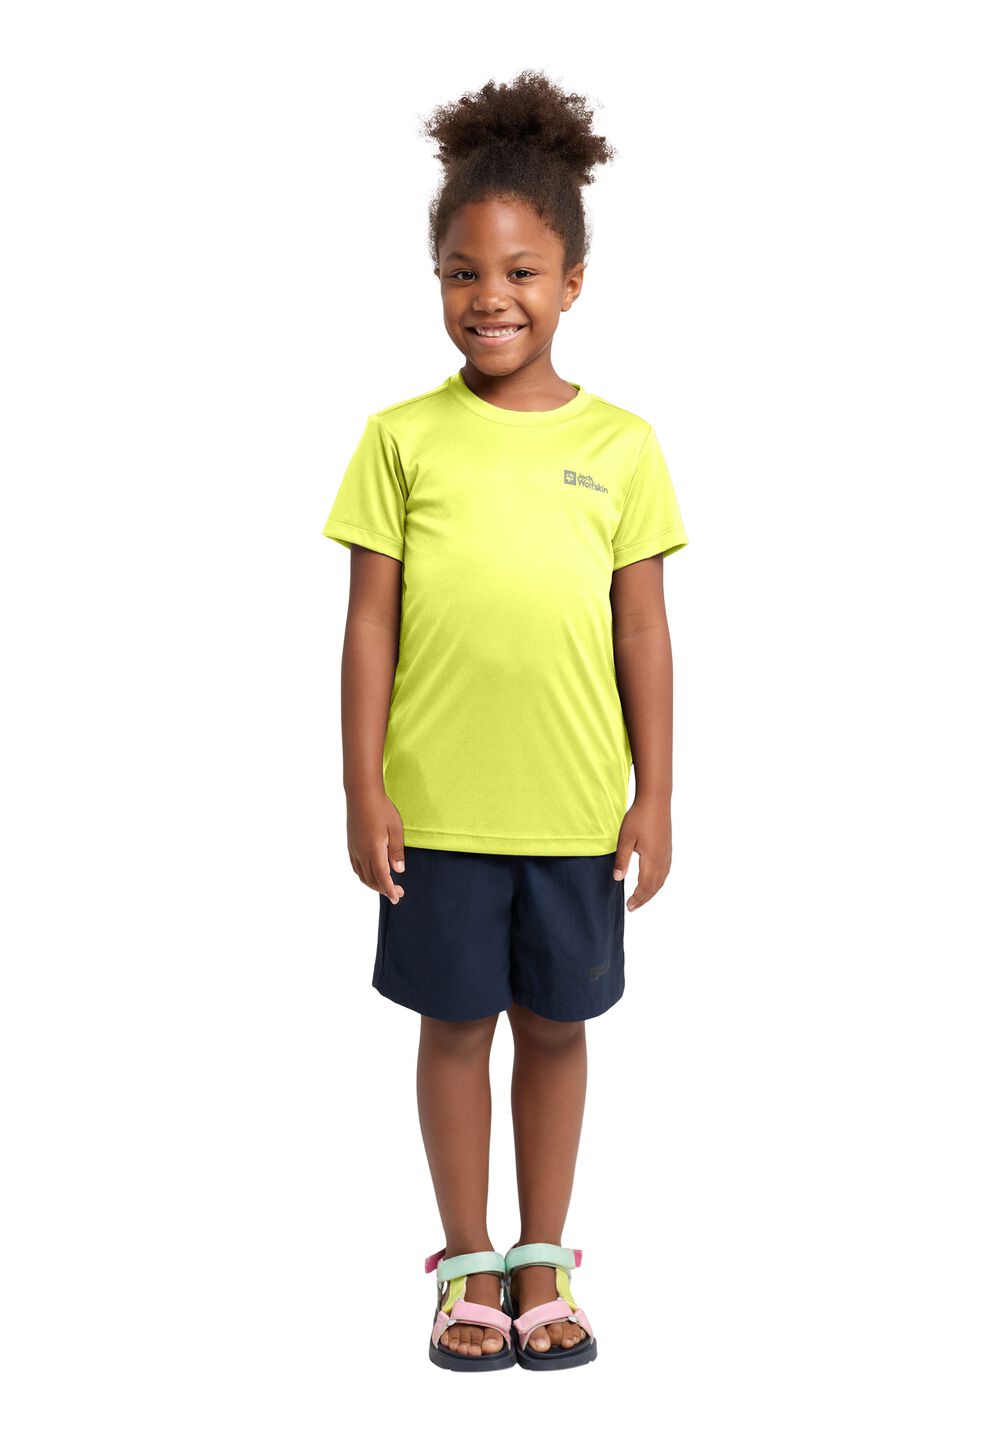 Jack Wolfskin Funktionsshirt Kinder Active Solid T-Shirt Kids 164 orange firefly von Jack Wolfskin